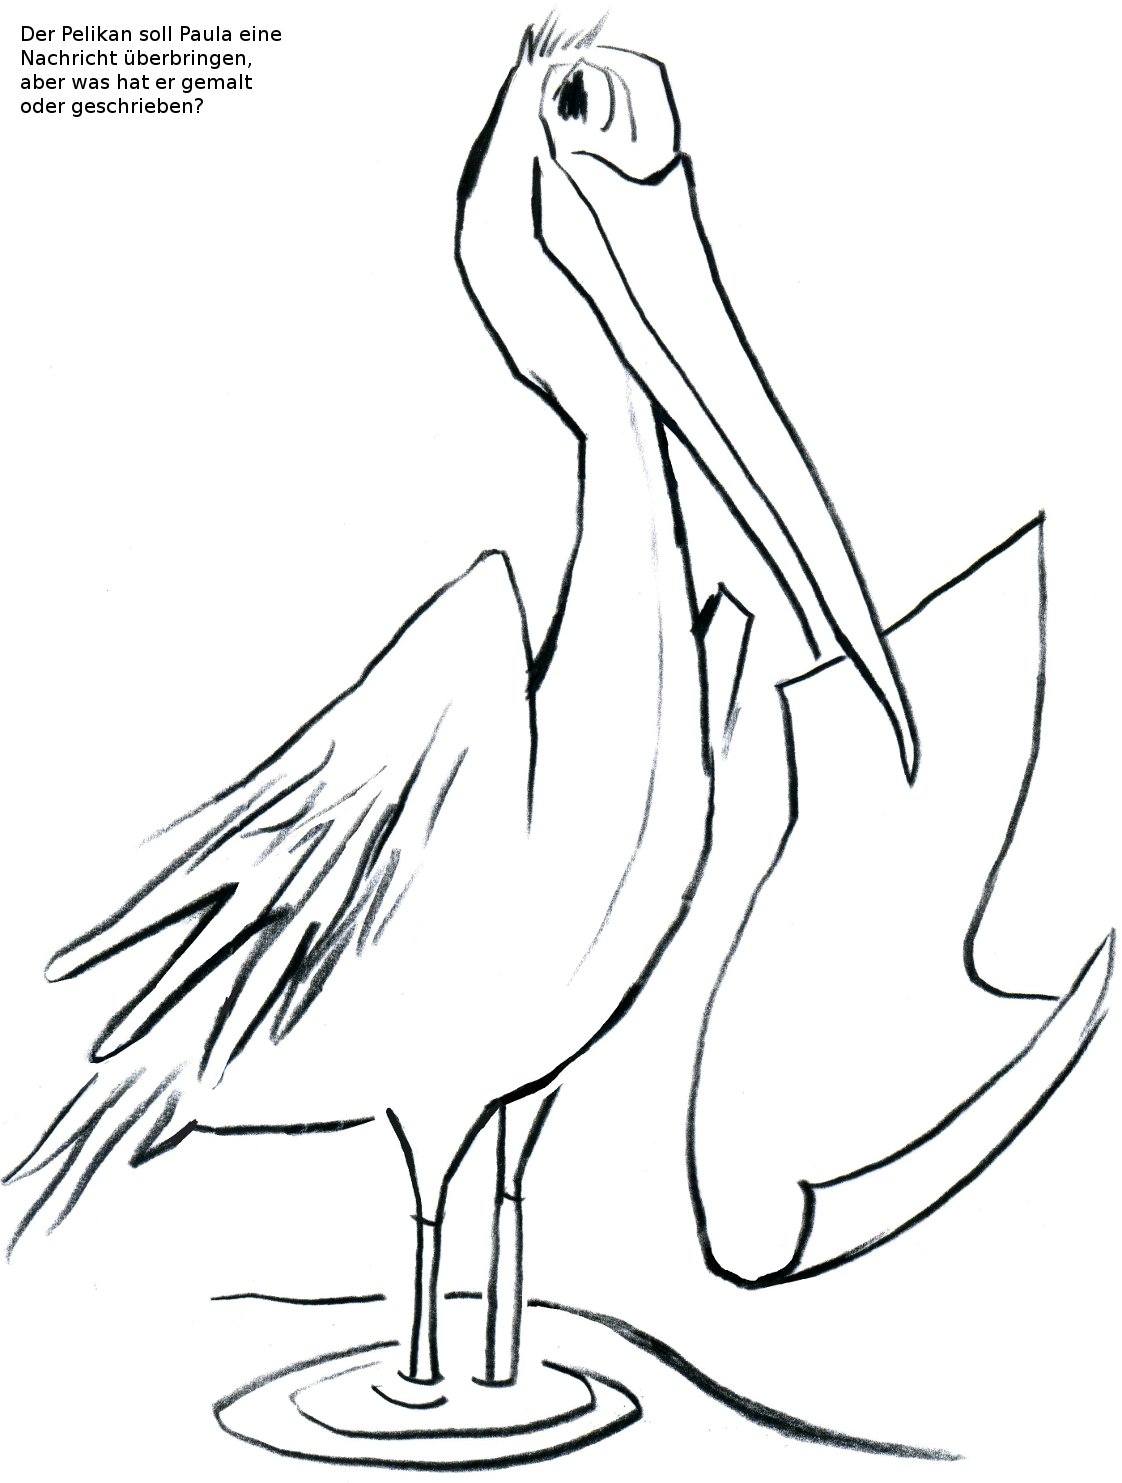 Weitermalbild Pelikan